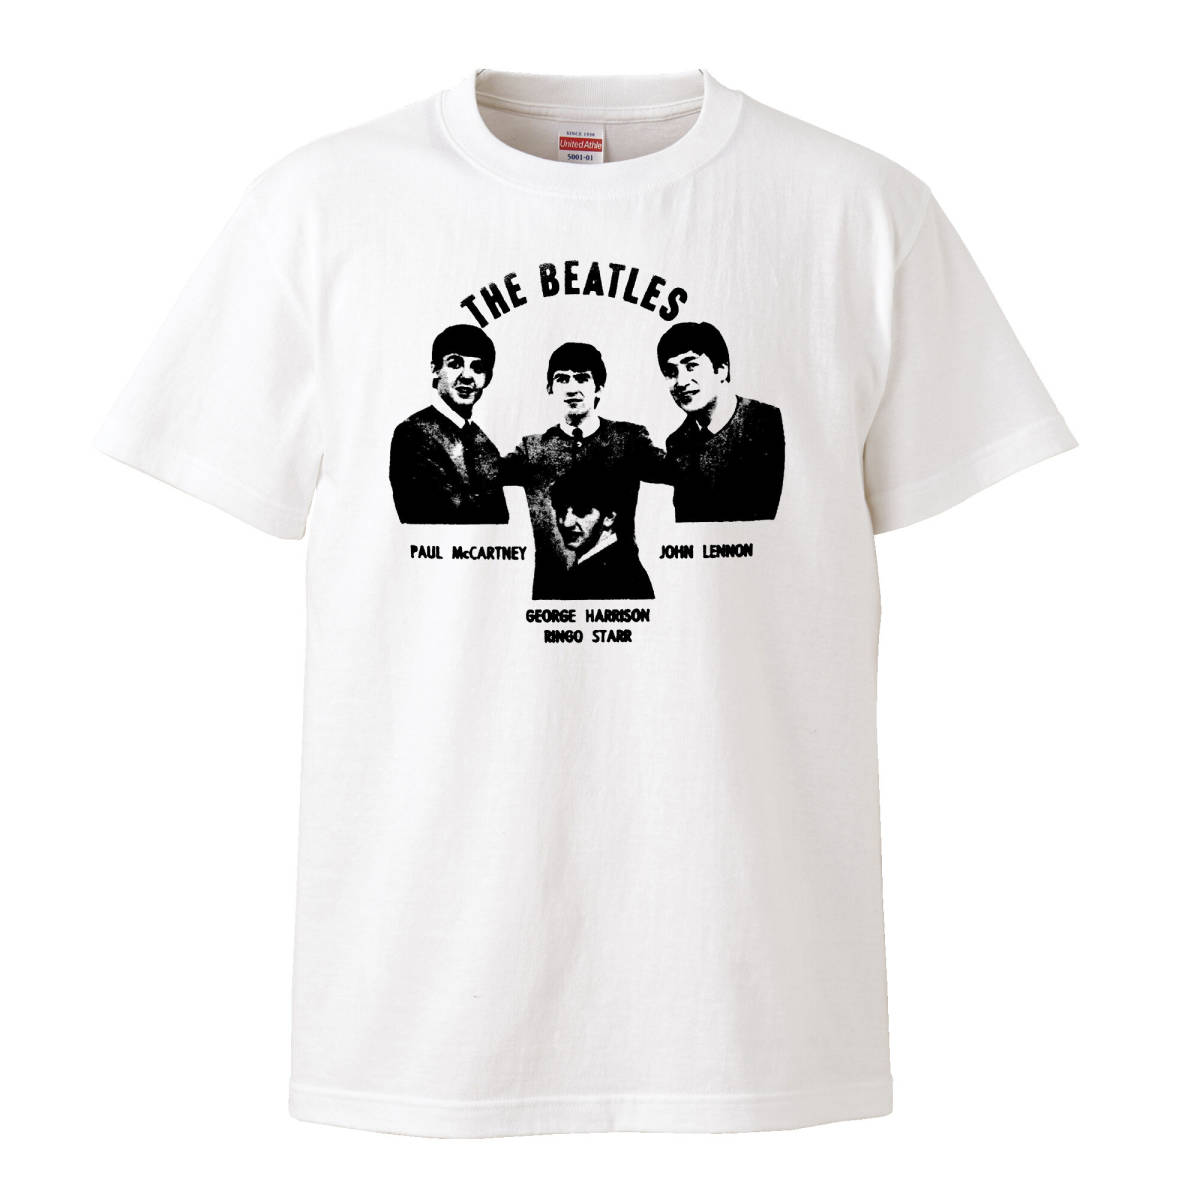 【Mサイズ Tシャツ】Beatles ビートルズ 60s LP CD レコード 7inch シングル盤 ポールマッカートニー ジョンレノン ジョージハリスン_画像1